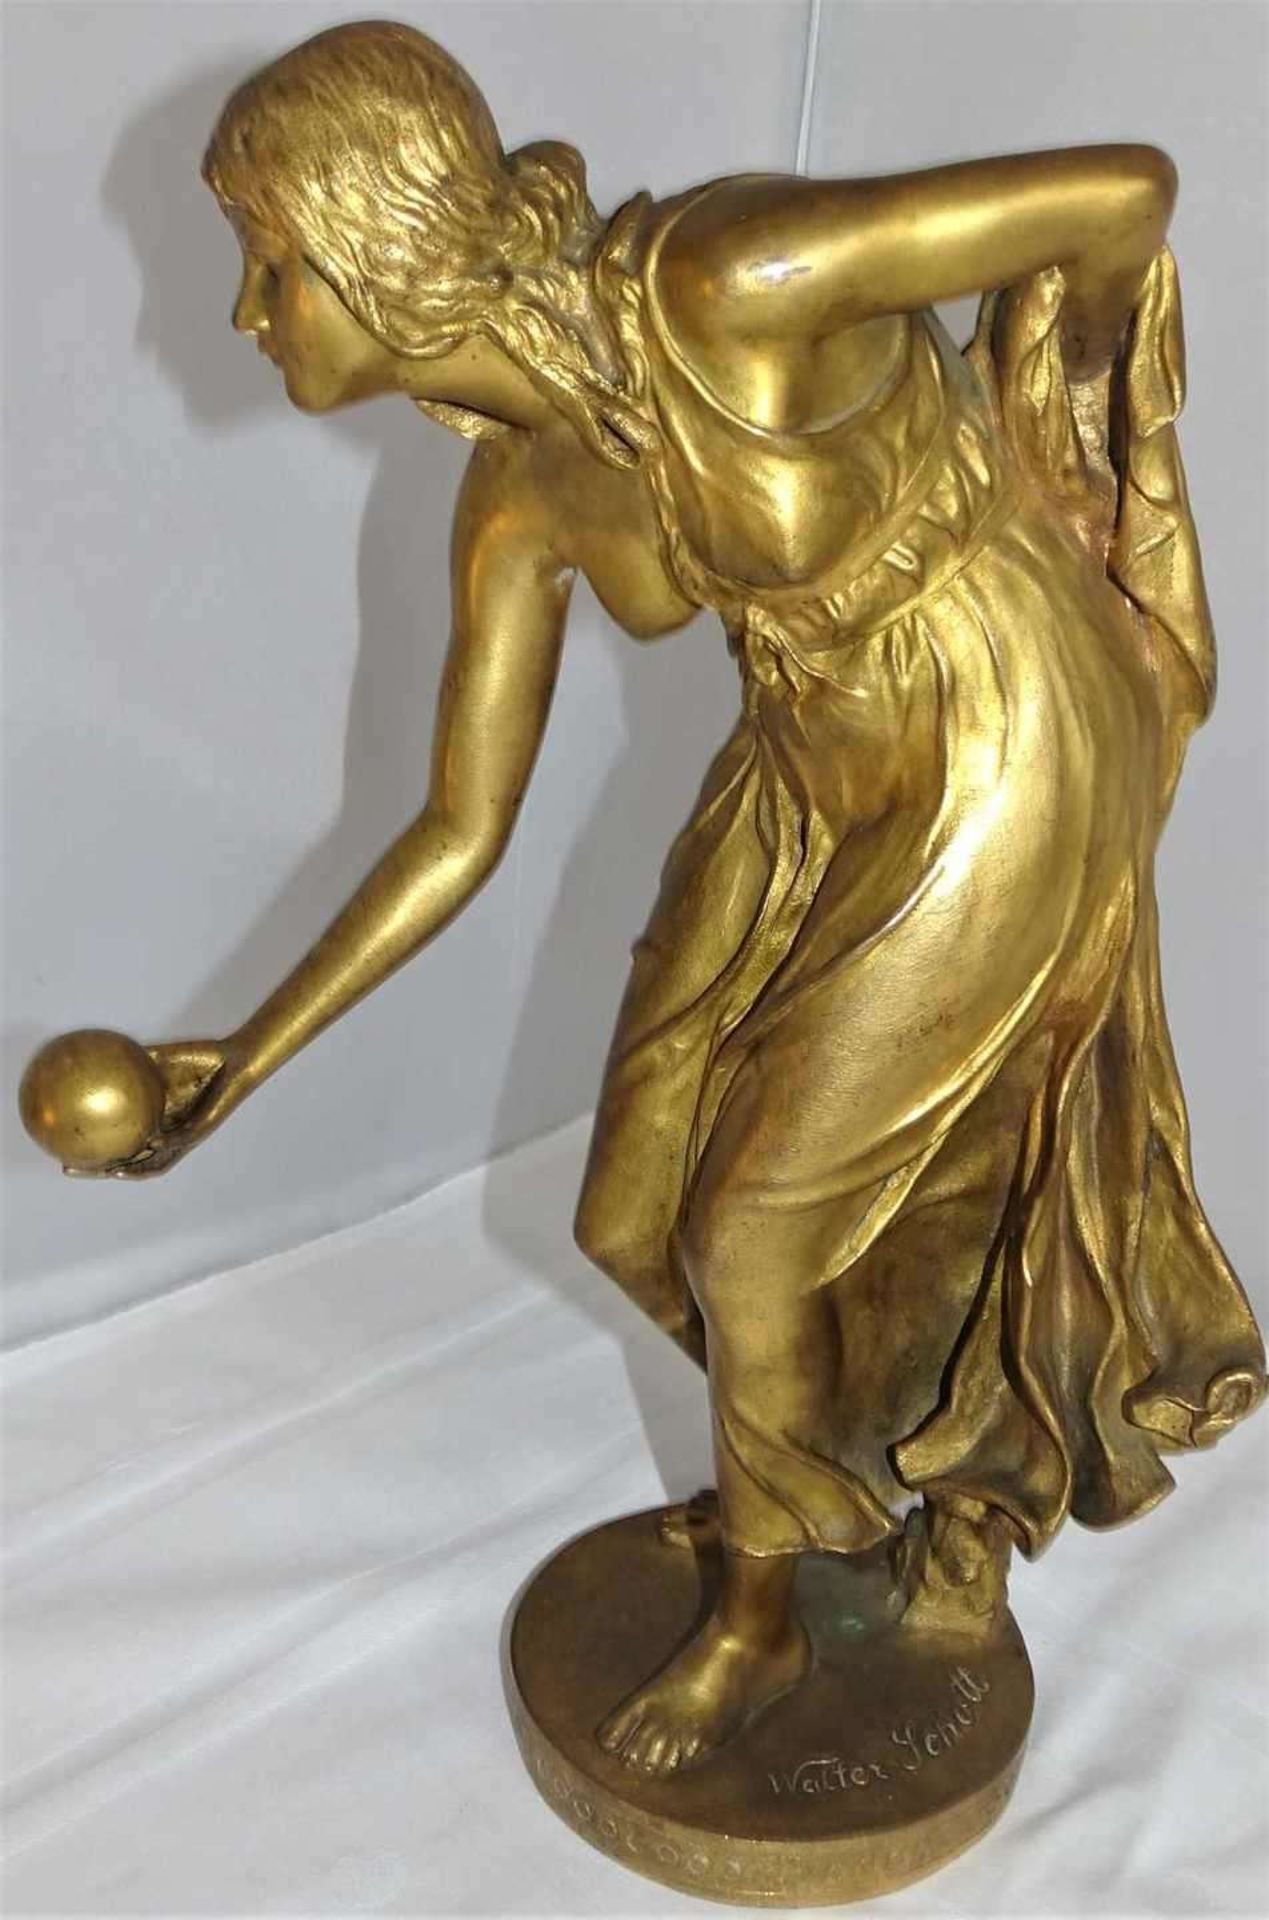 Bronzefigur Walter Schott (1861-1938) "Die Kugelspielerin", feuervergoldet. Am Stand signiert. Höhe